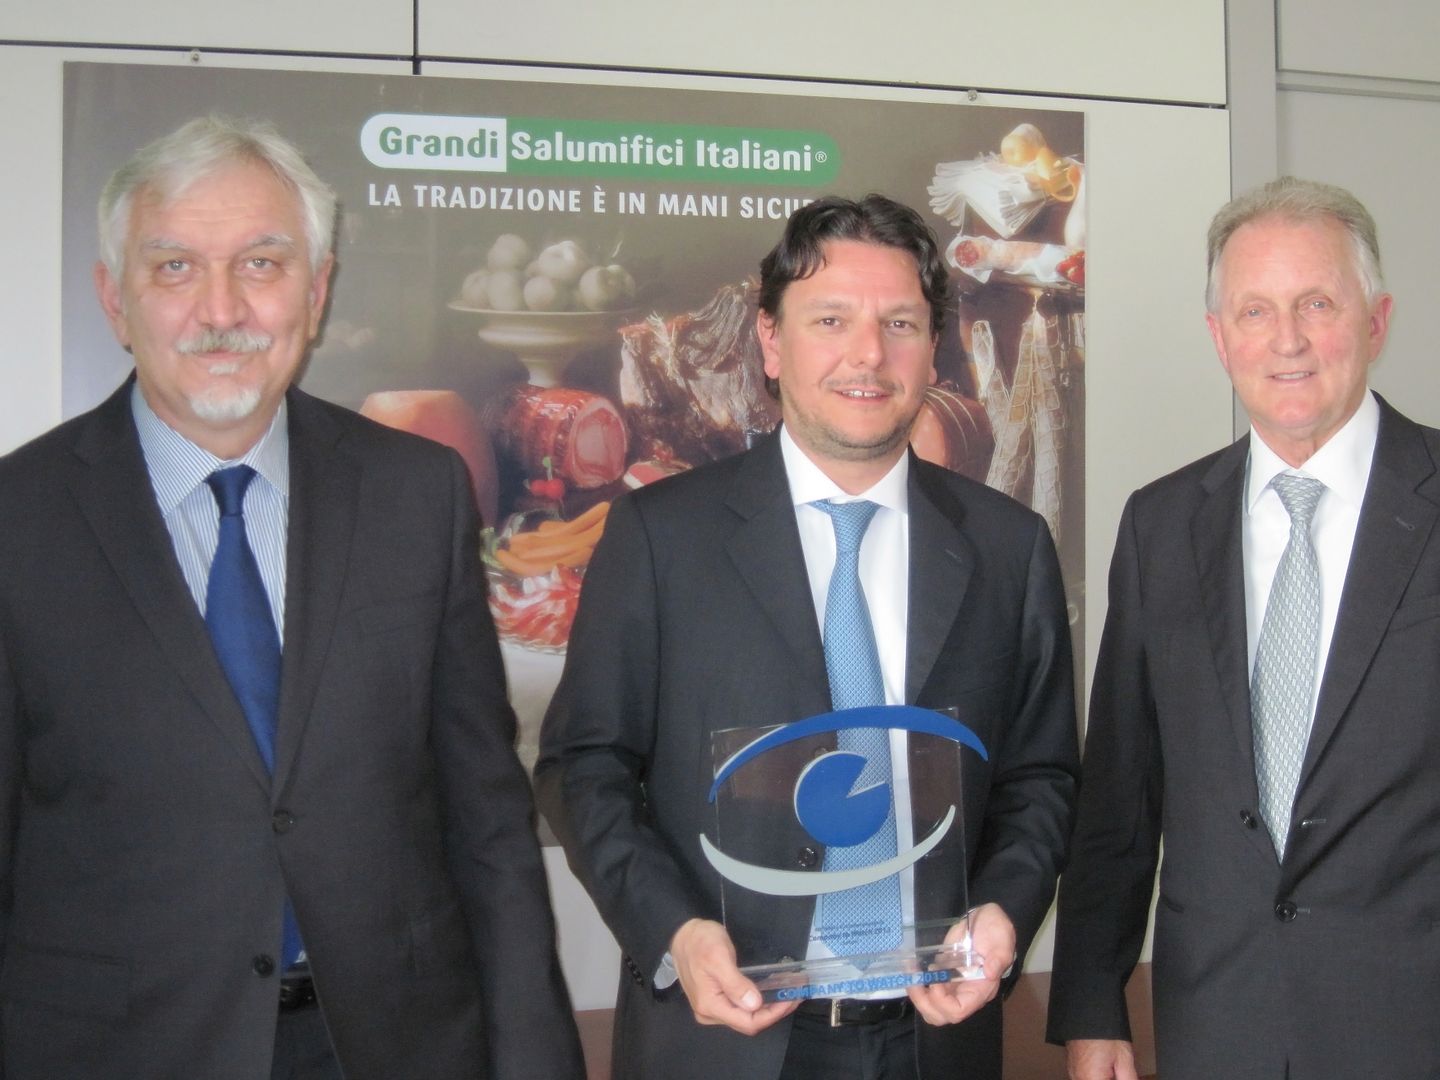 GRANDI SALUMIFICI ITALIANI VINCE IL PREMIO “COMPANY TO WATCH 2013” DI DATABANK